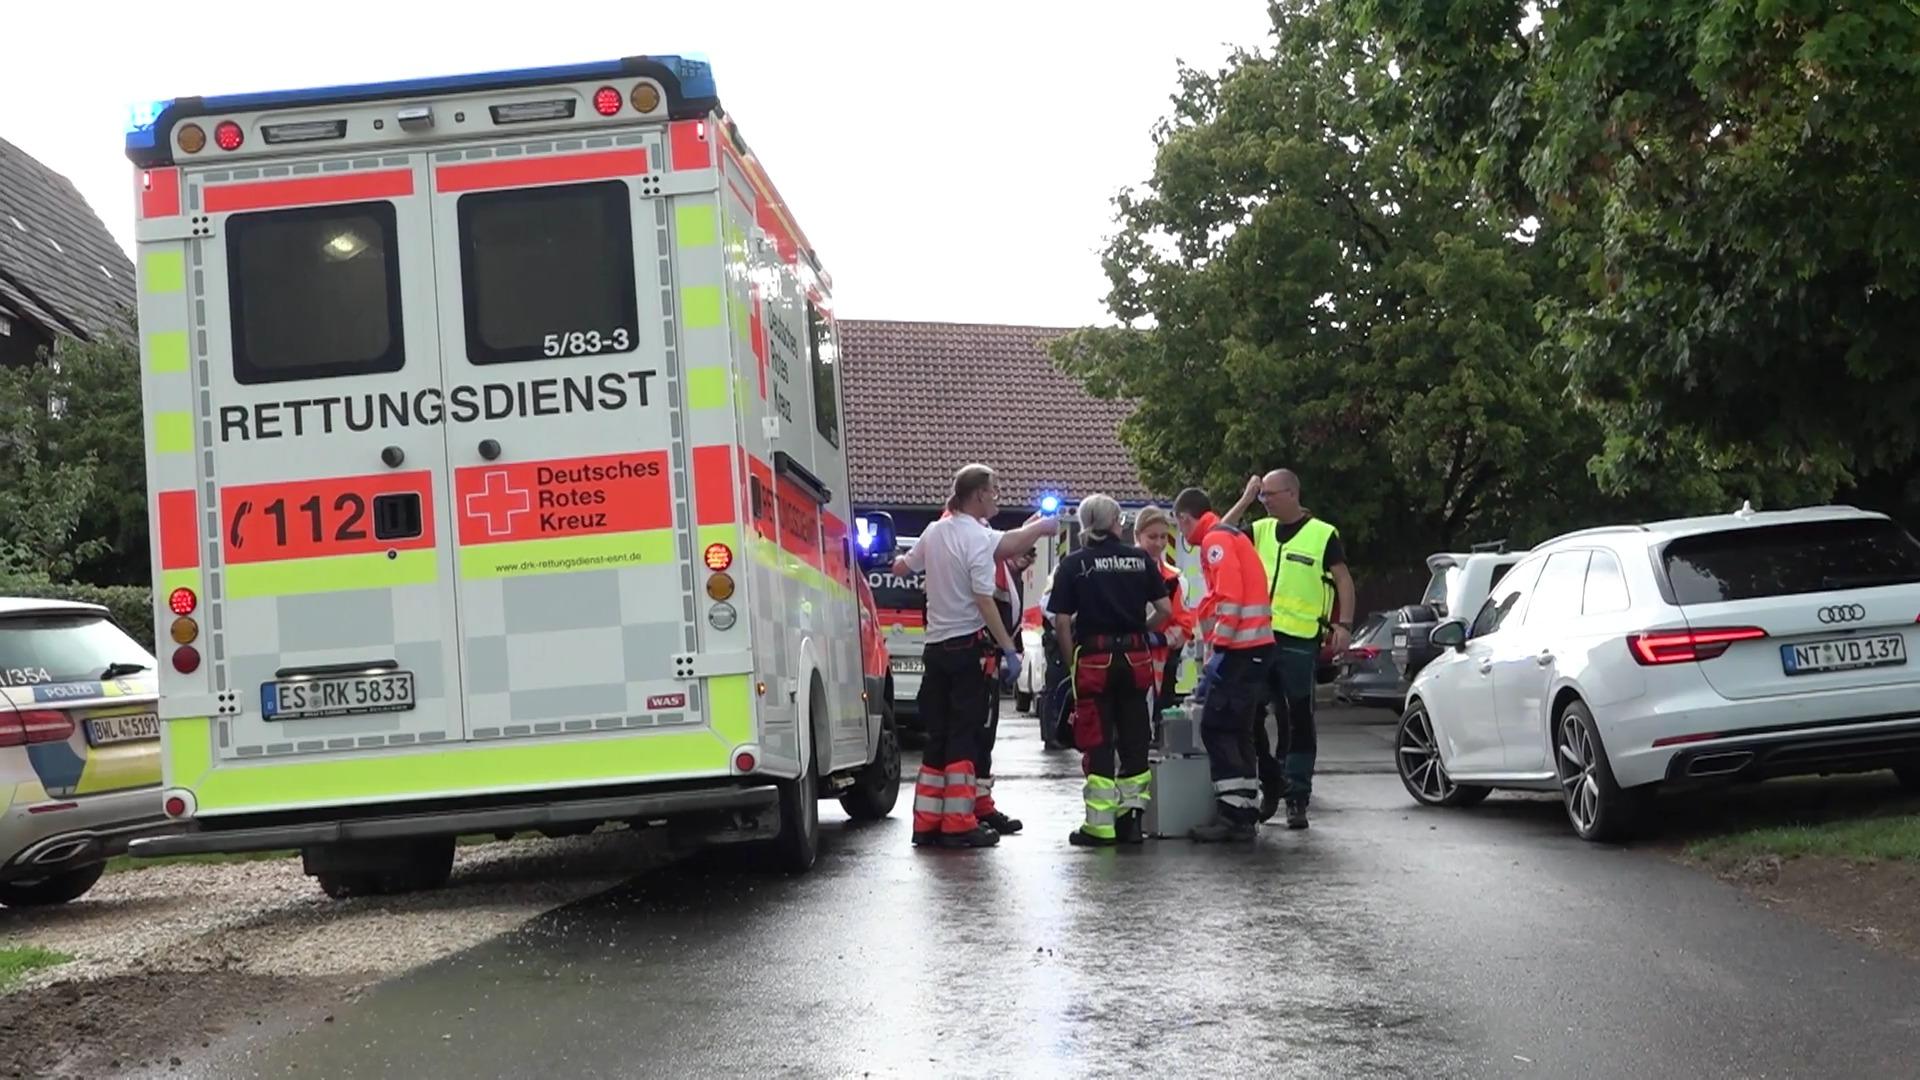 Blitz: Drei Personen in Lebensgefahr - darunter Kind Blitzeinschlag in Baden-Württemberg